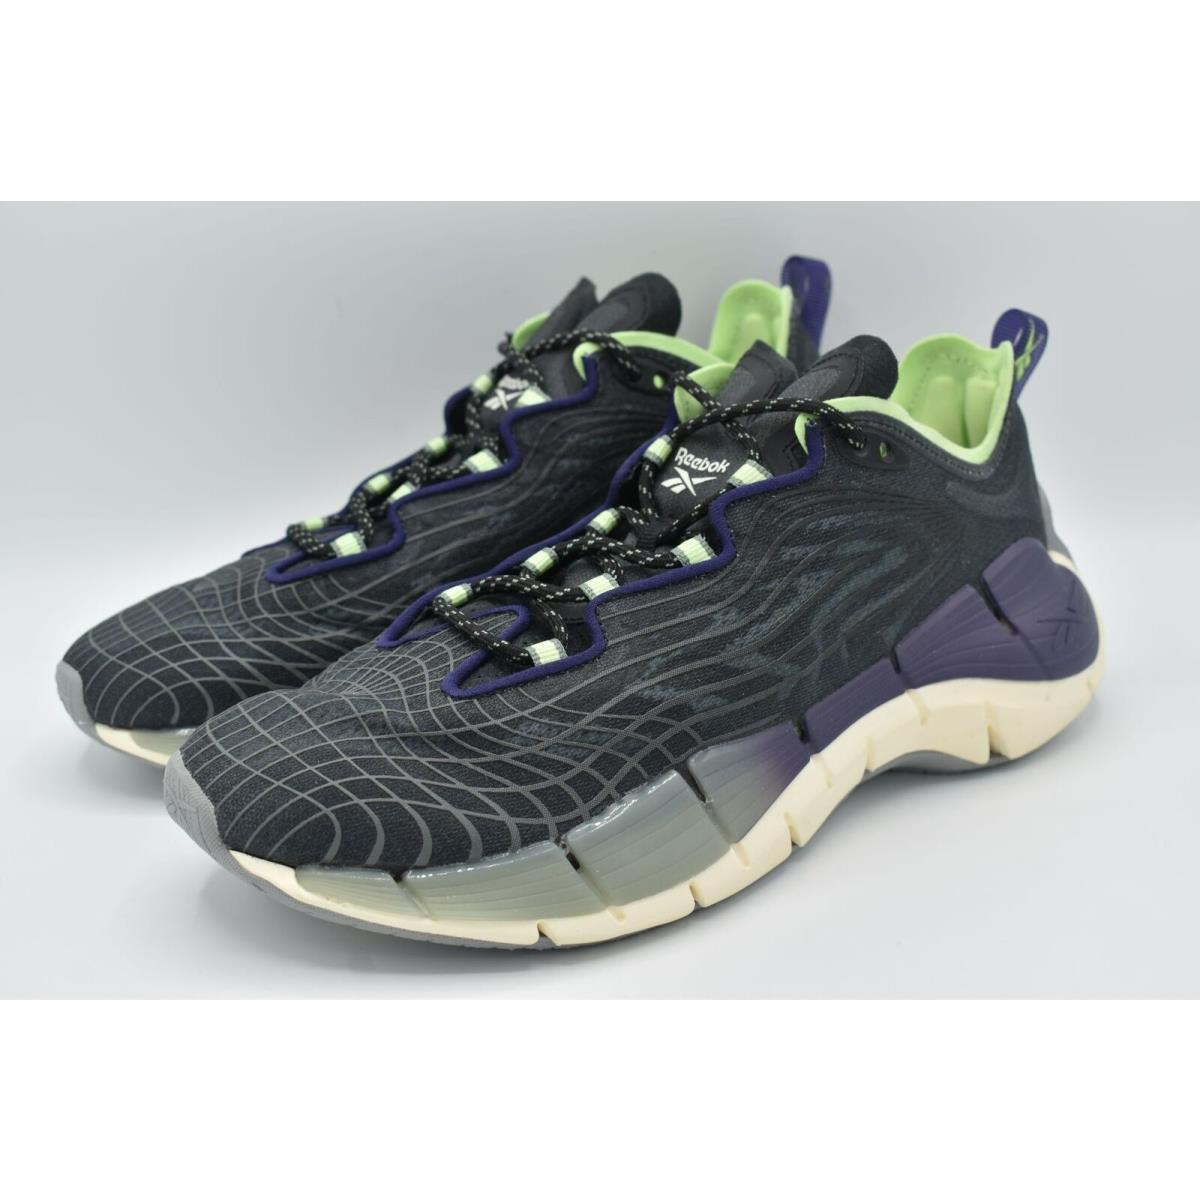 Reebok Womens Size 9 Zig Kinetica II Black Mint Purple Running Shoes Sneakers